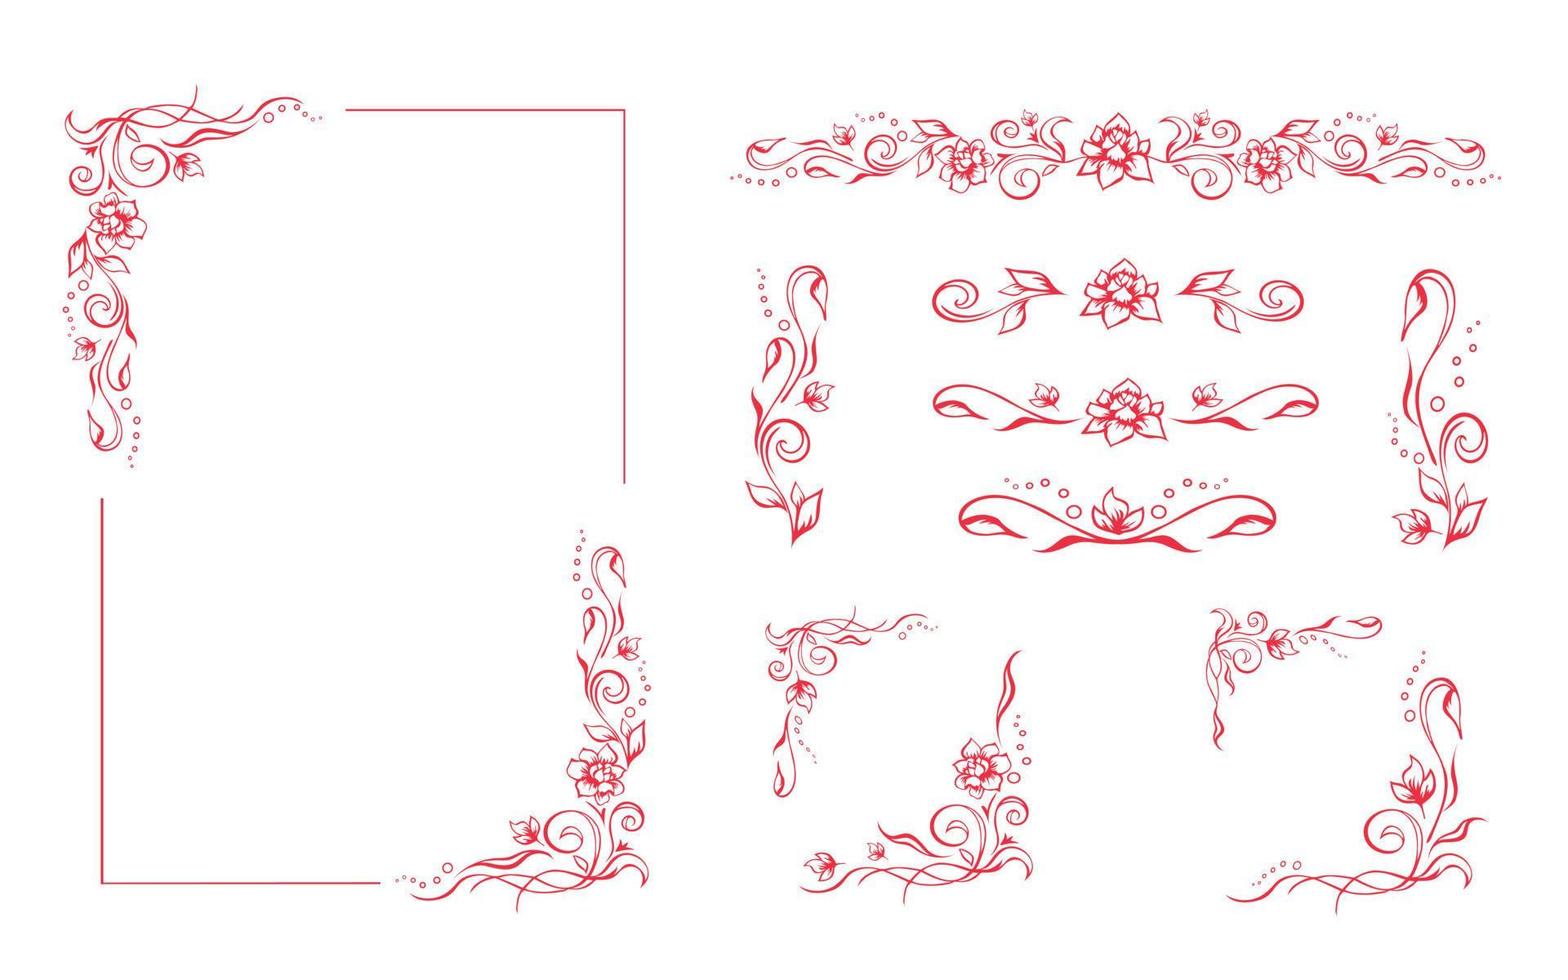 cadre floral rectangulaire, modèle de bordure rose romantique avec fioritures. éléments décoratifs élégants dessinés à la main, feuillage et fleur. ensemble de vignettes modifiables sur fond blanc pour les impressions vecteur